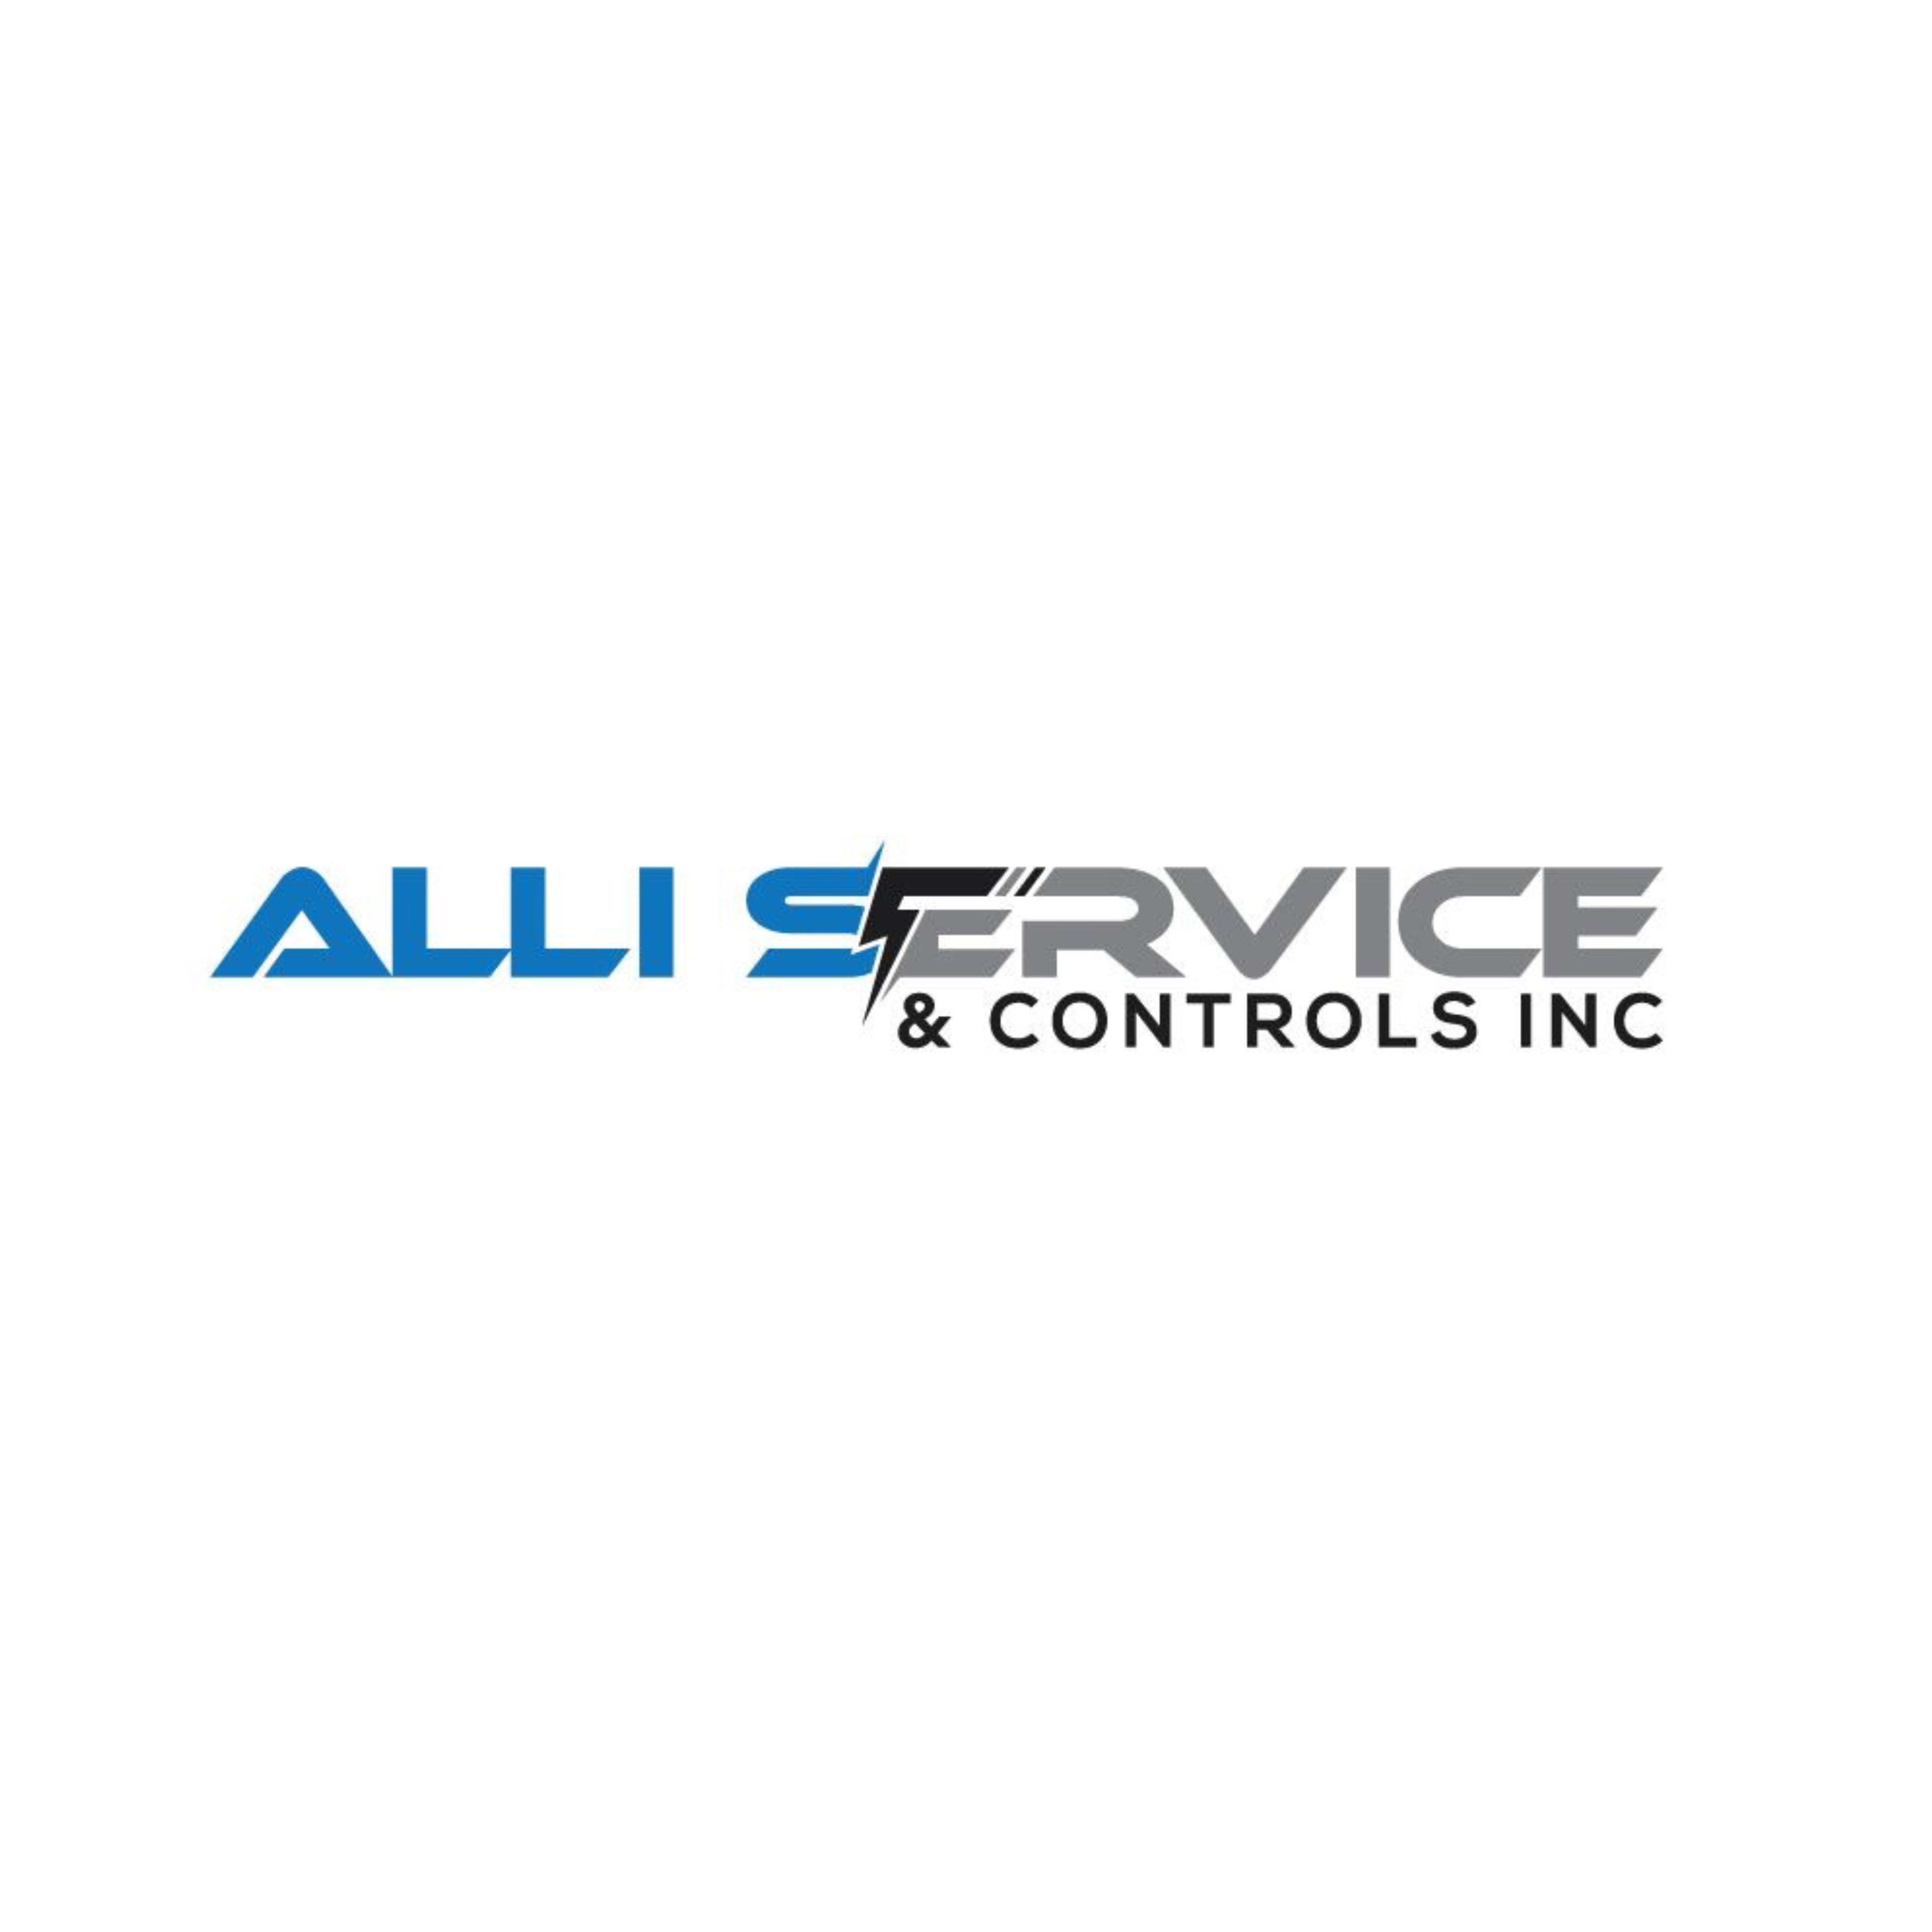 ALLI Services & Controls Inc